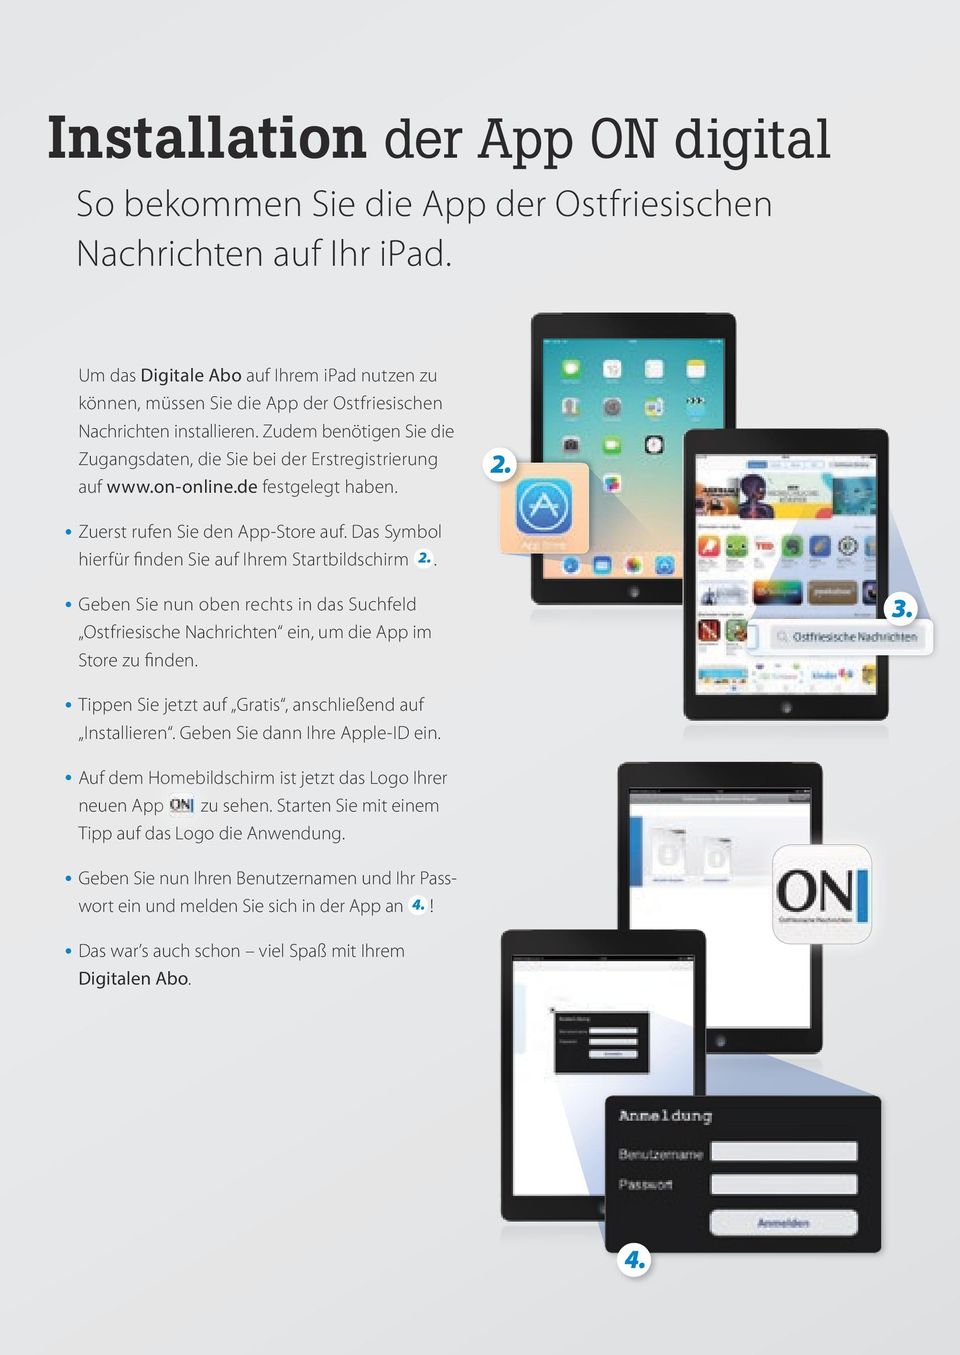 on-online.de festgelegt haben. 2. Zuerst rufen Sie den App-Store auf. Das Symbol hierfür finden Sie auf Ihrem Startbildschirm 2.